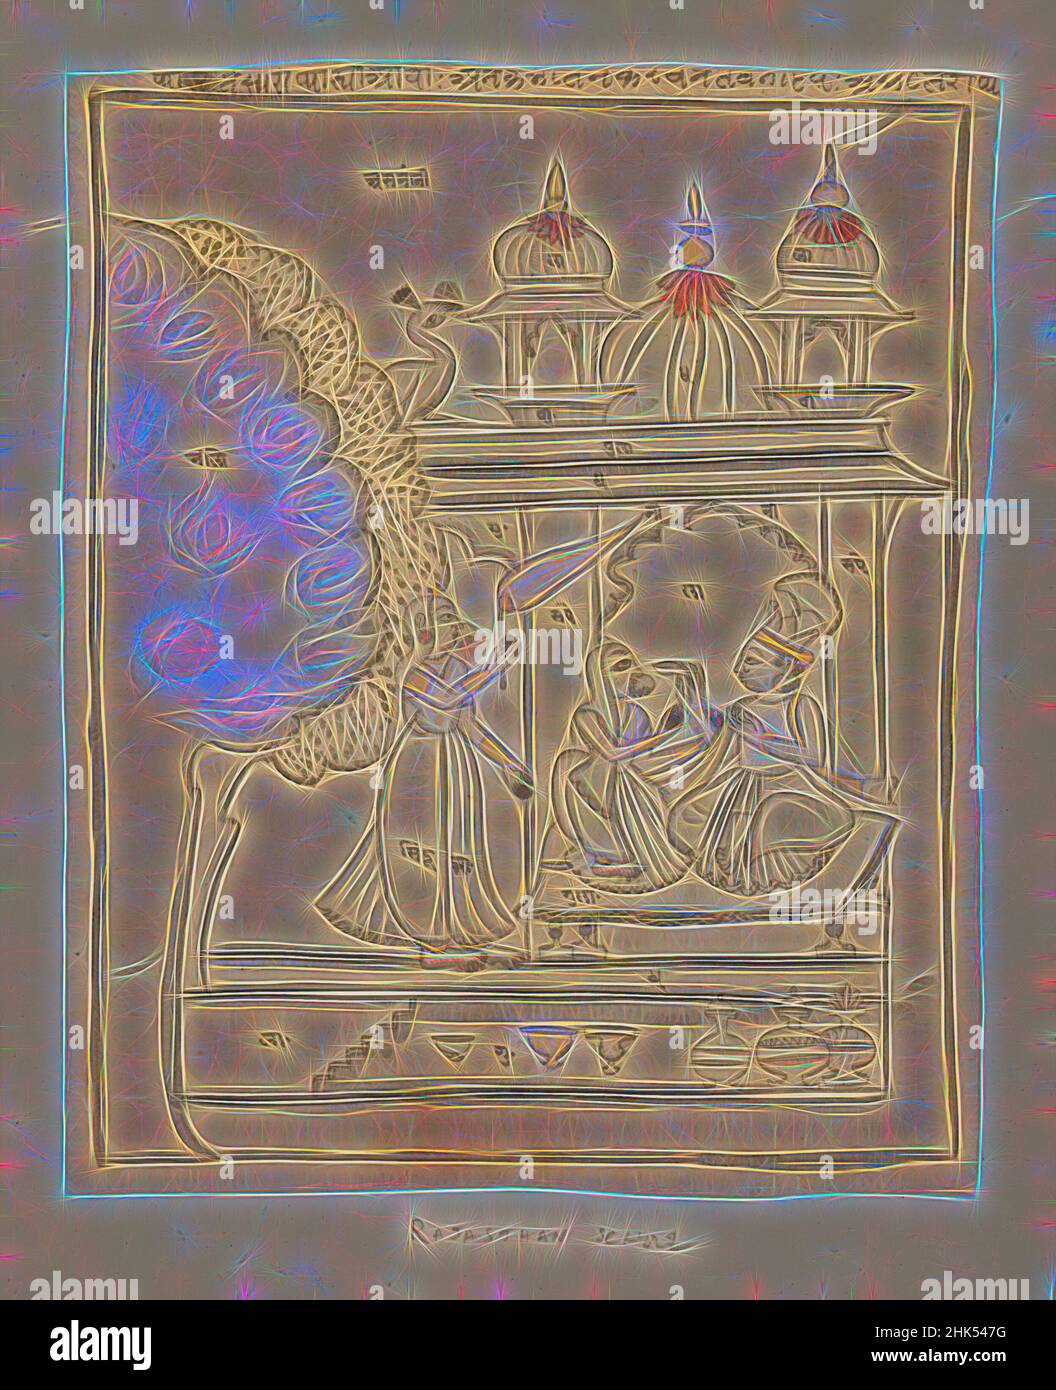 Inspiré par Malkosa Raga, dessin, indien, encre et couleurs sur papier, Rajasthan, Inde, ca. 1750-1800, feuille: 9 5/16 x 7 5/8 po., 23,7 x 19,4 cm, revisitée par Artotop. L'art classique réinventé avec une touche moderne. Conception de lumière chaleureuse et gaie, de luminosité et de rayonnement de lumière. La photographie s'inspire du surréalisme et du futurisme, embrassant l'énergie dynamique de la technologie moderne, du mouvement, de la vitesse et révolutionne la culture Banque D'Images